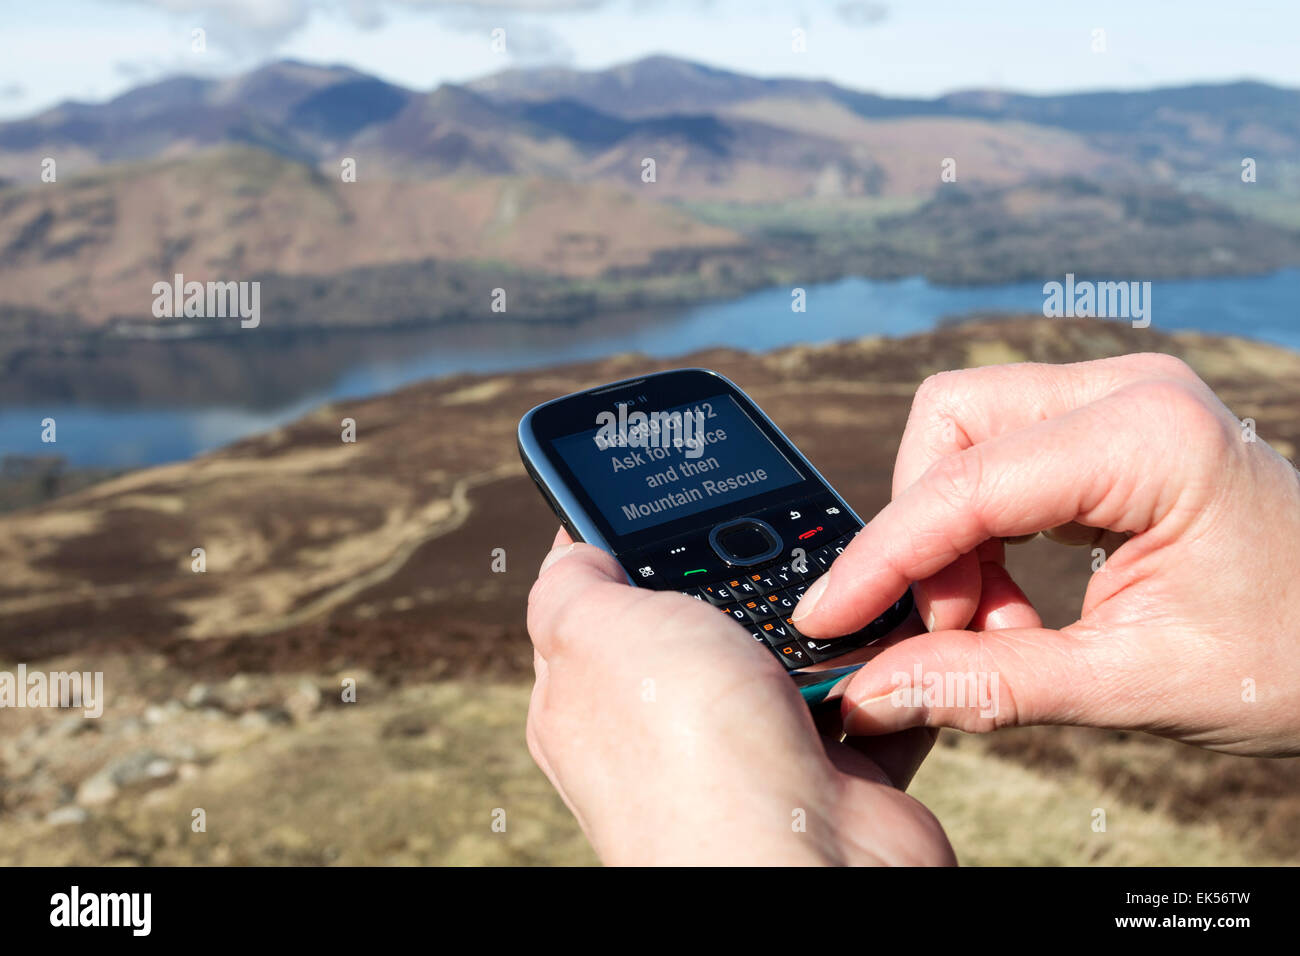 Concetto di immagine di una persona che usa un telefono cellulare nelle montagne di chiamare un Mountain Rescue Team Lake District Cumbria Regno Unito Foto Stock